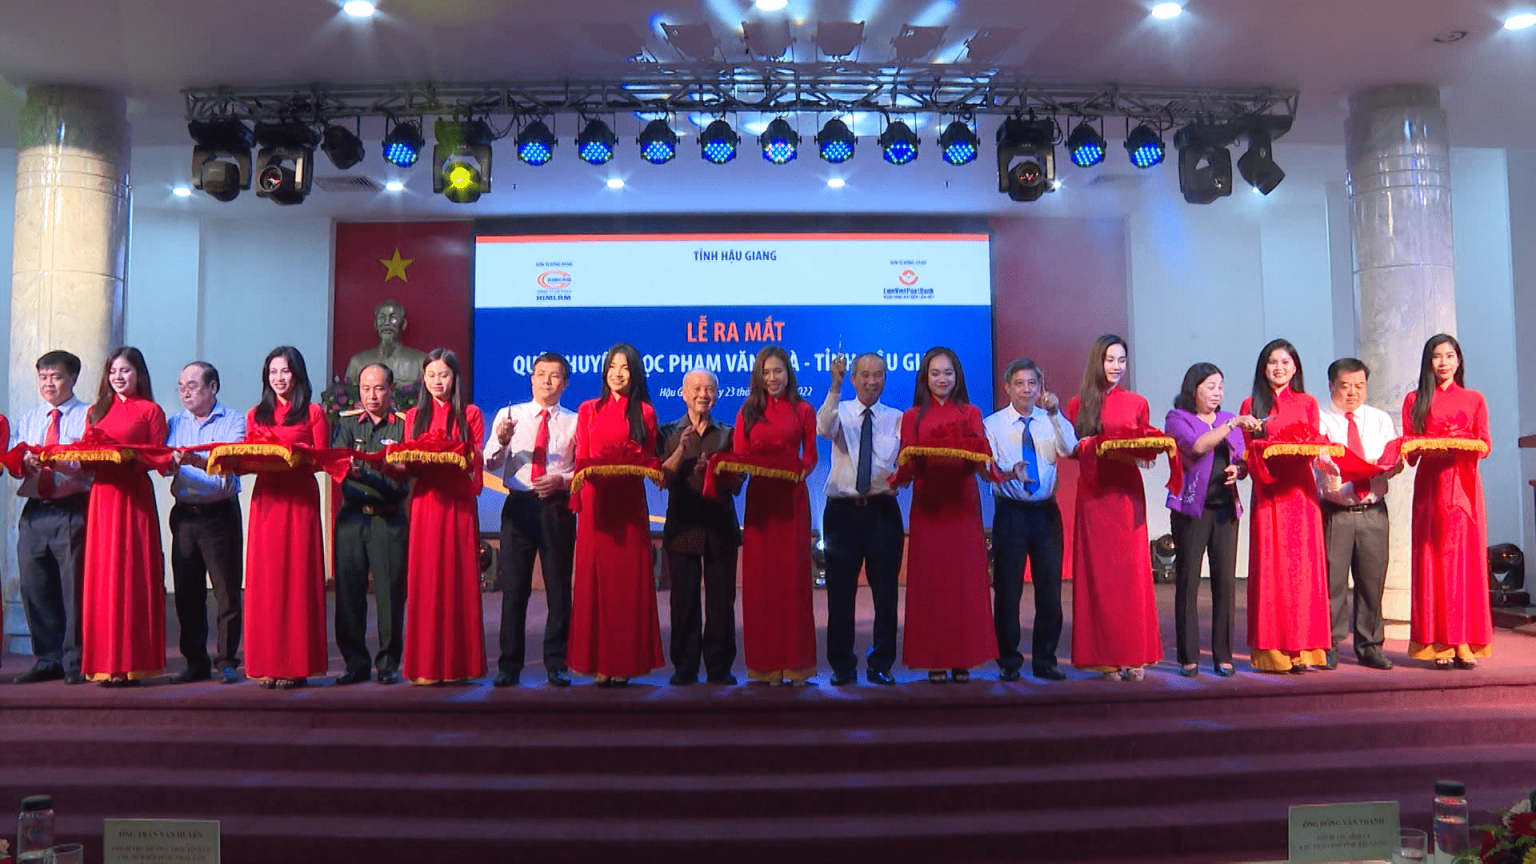 Ra mắt Quỹ khuyến học Phạm Văn Trà với kinh phí ban đầu 30 tỉ đồng, nhằm giúp học sinh khó khăn có thêm điều kiện đến trường.